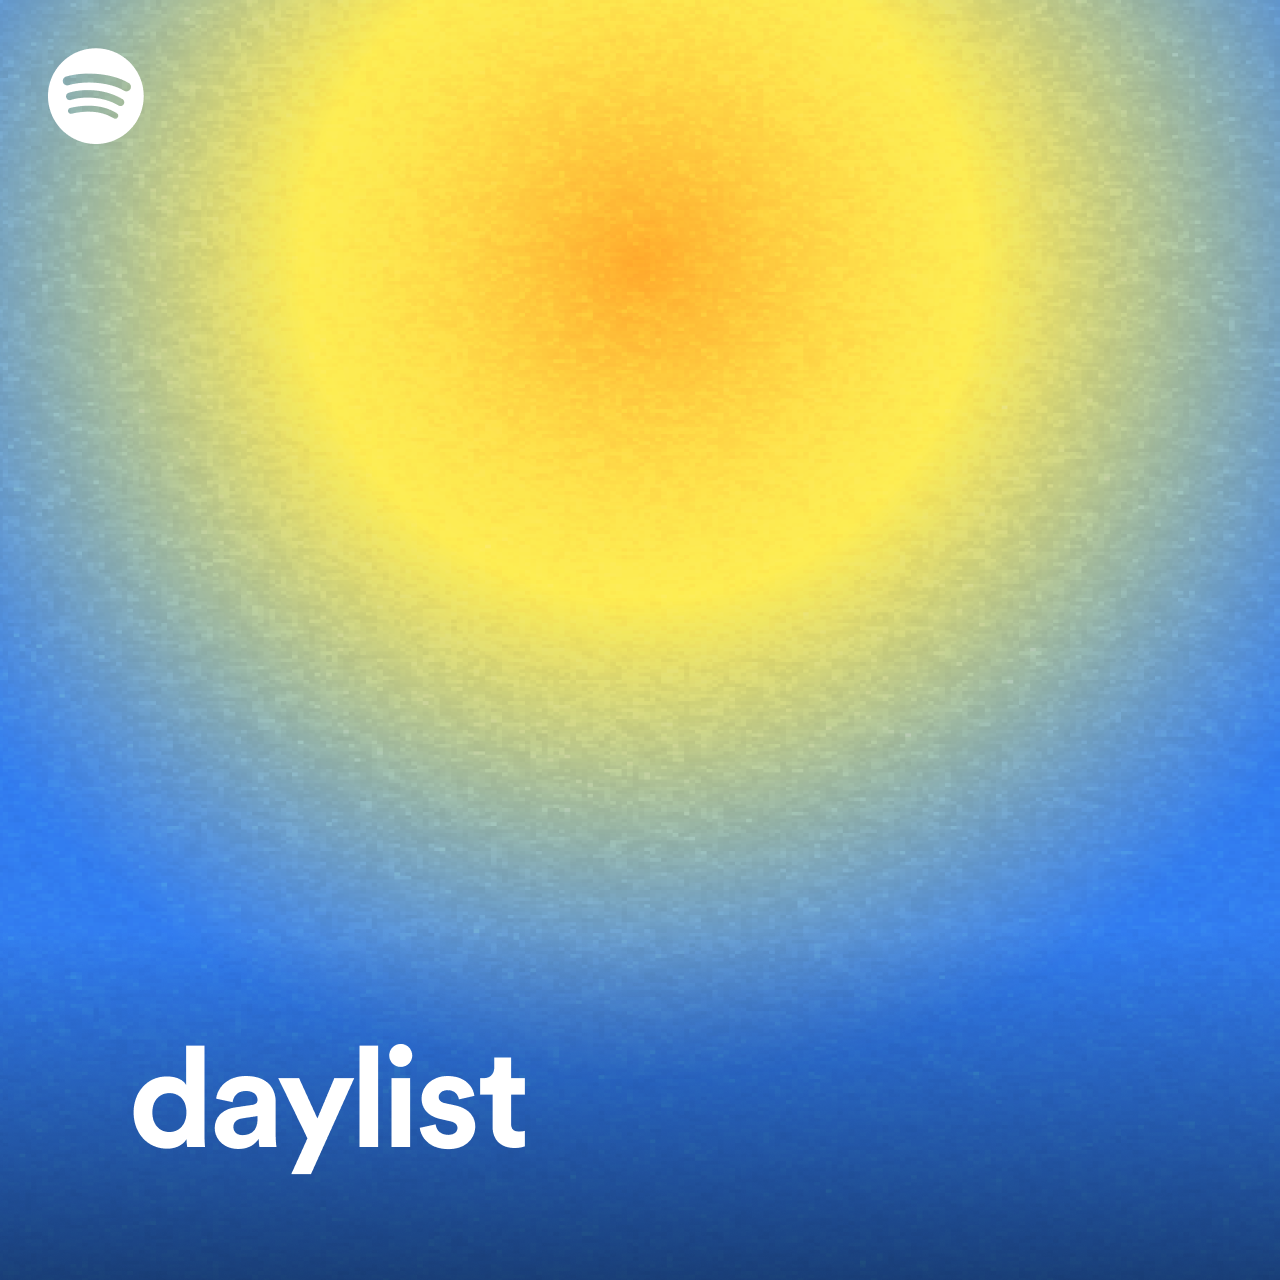 Spotify daylist logo